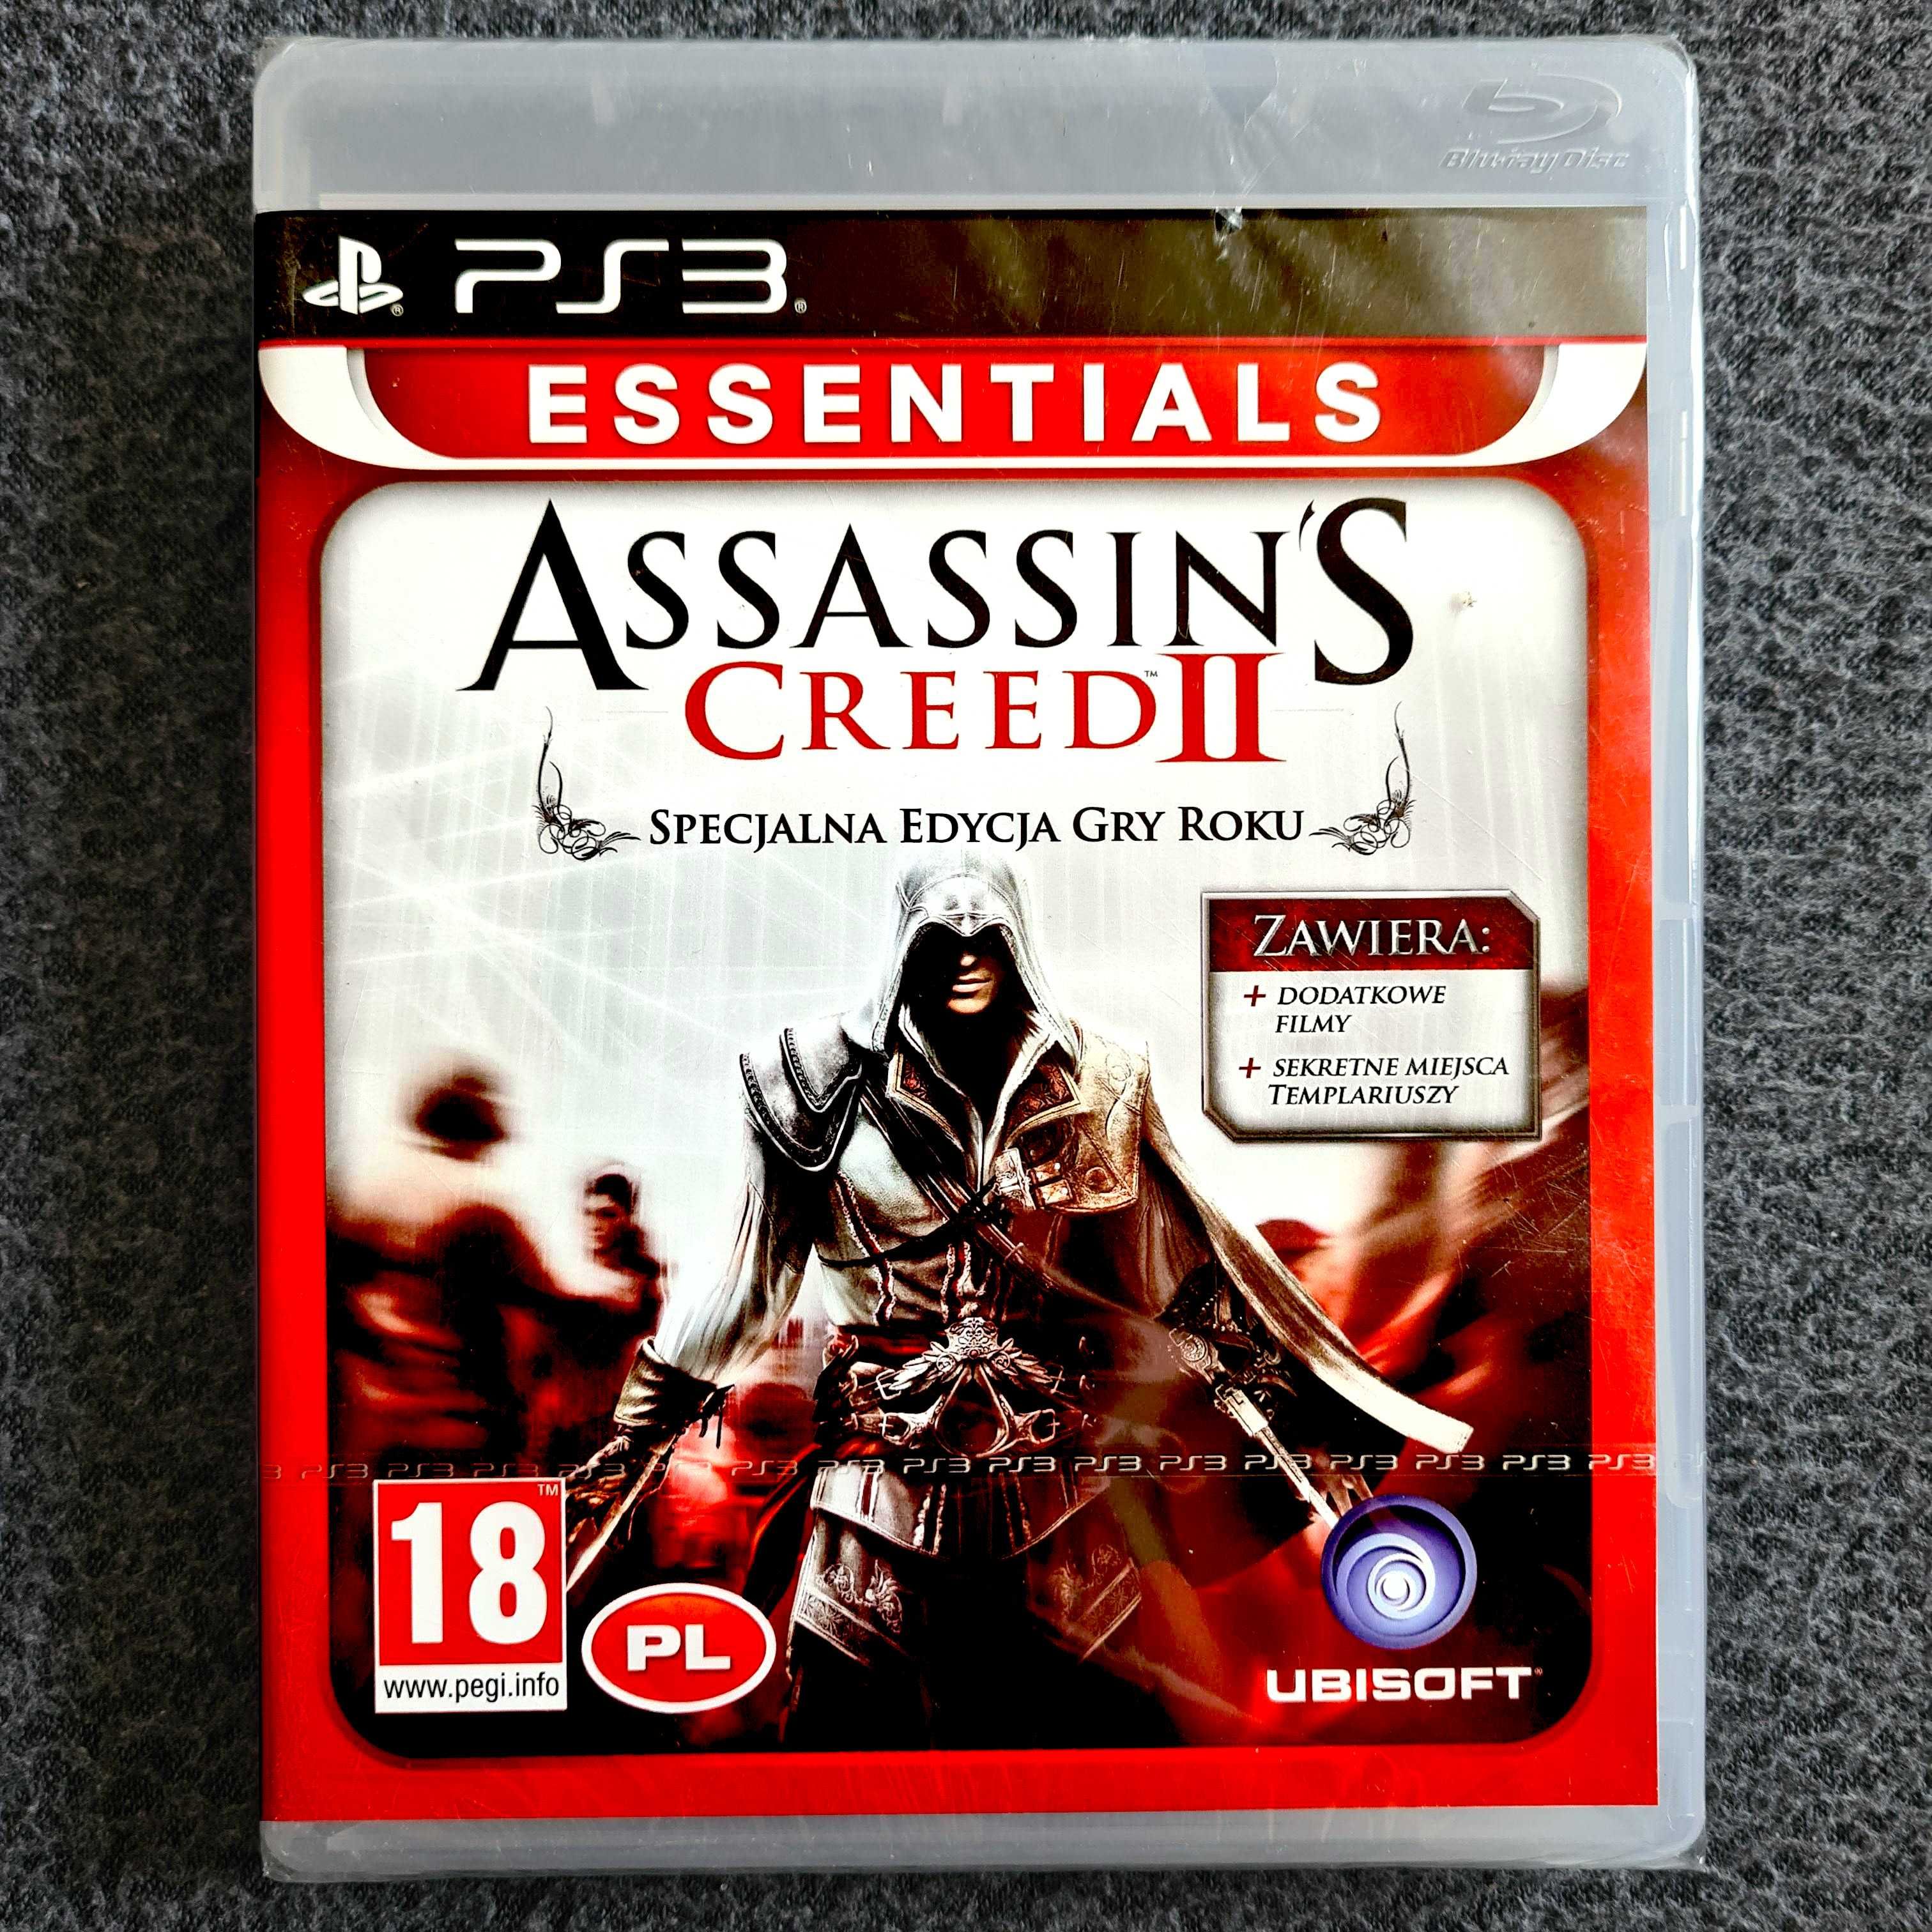 Assassins Creed II PL GOTY Ps3 Specjalna Edycja Gry Roku Nowa w folii